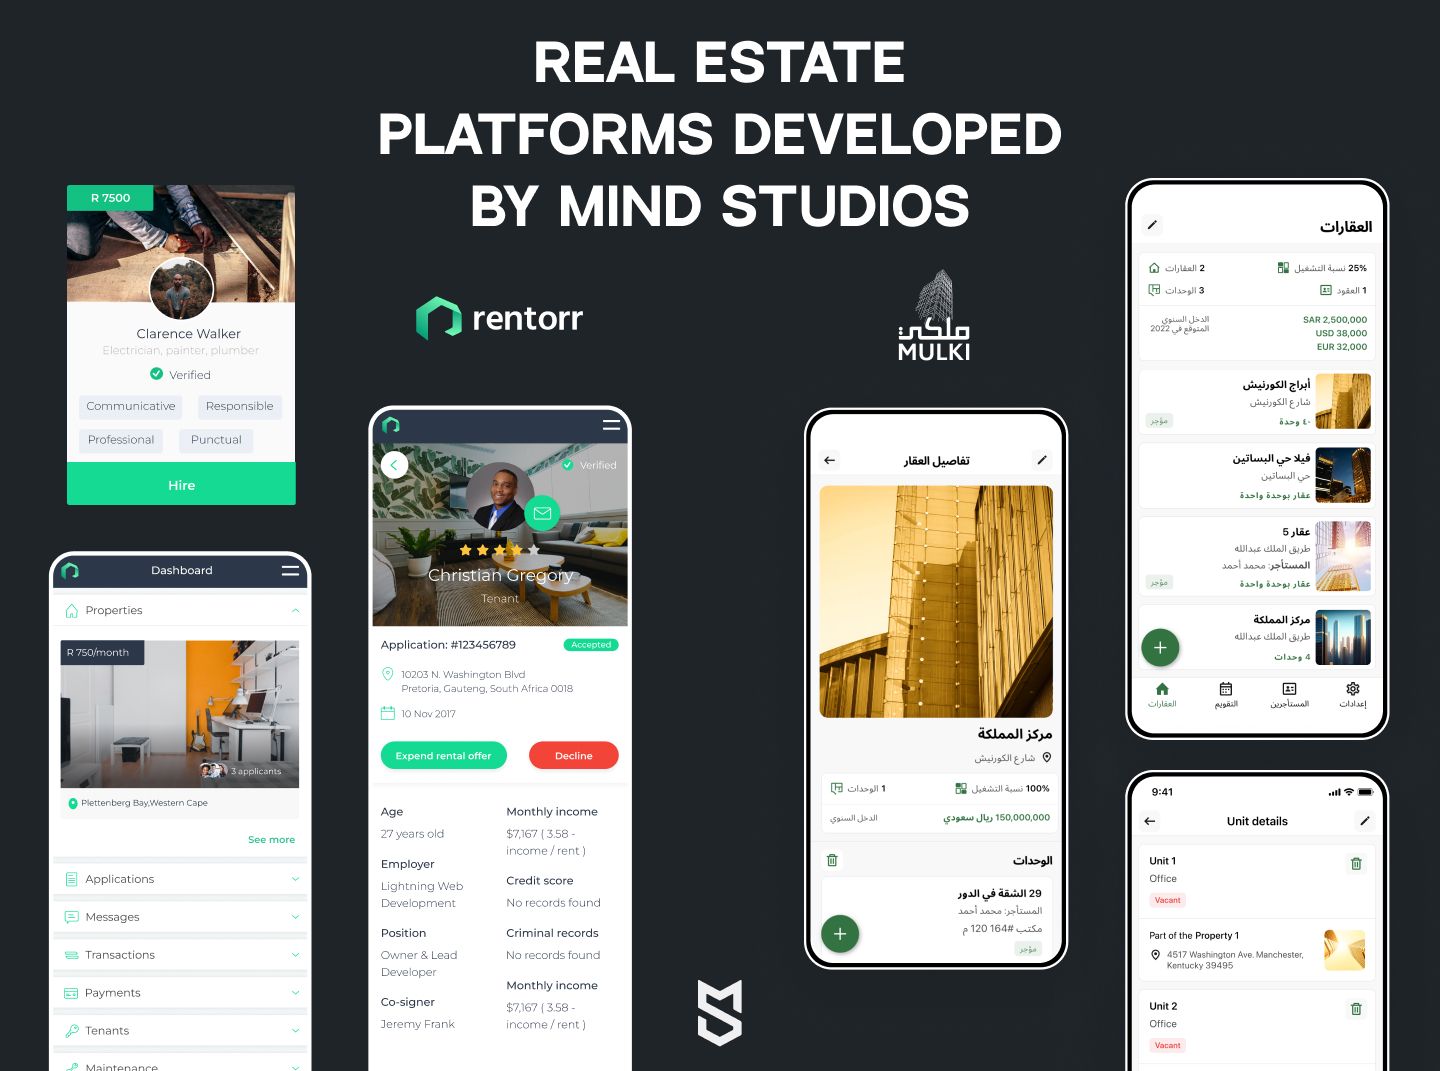 Real estate platforms developed by Mind Studios